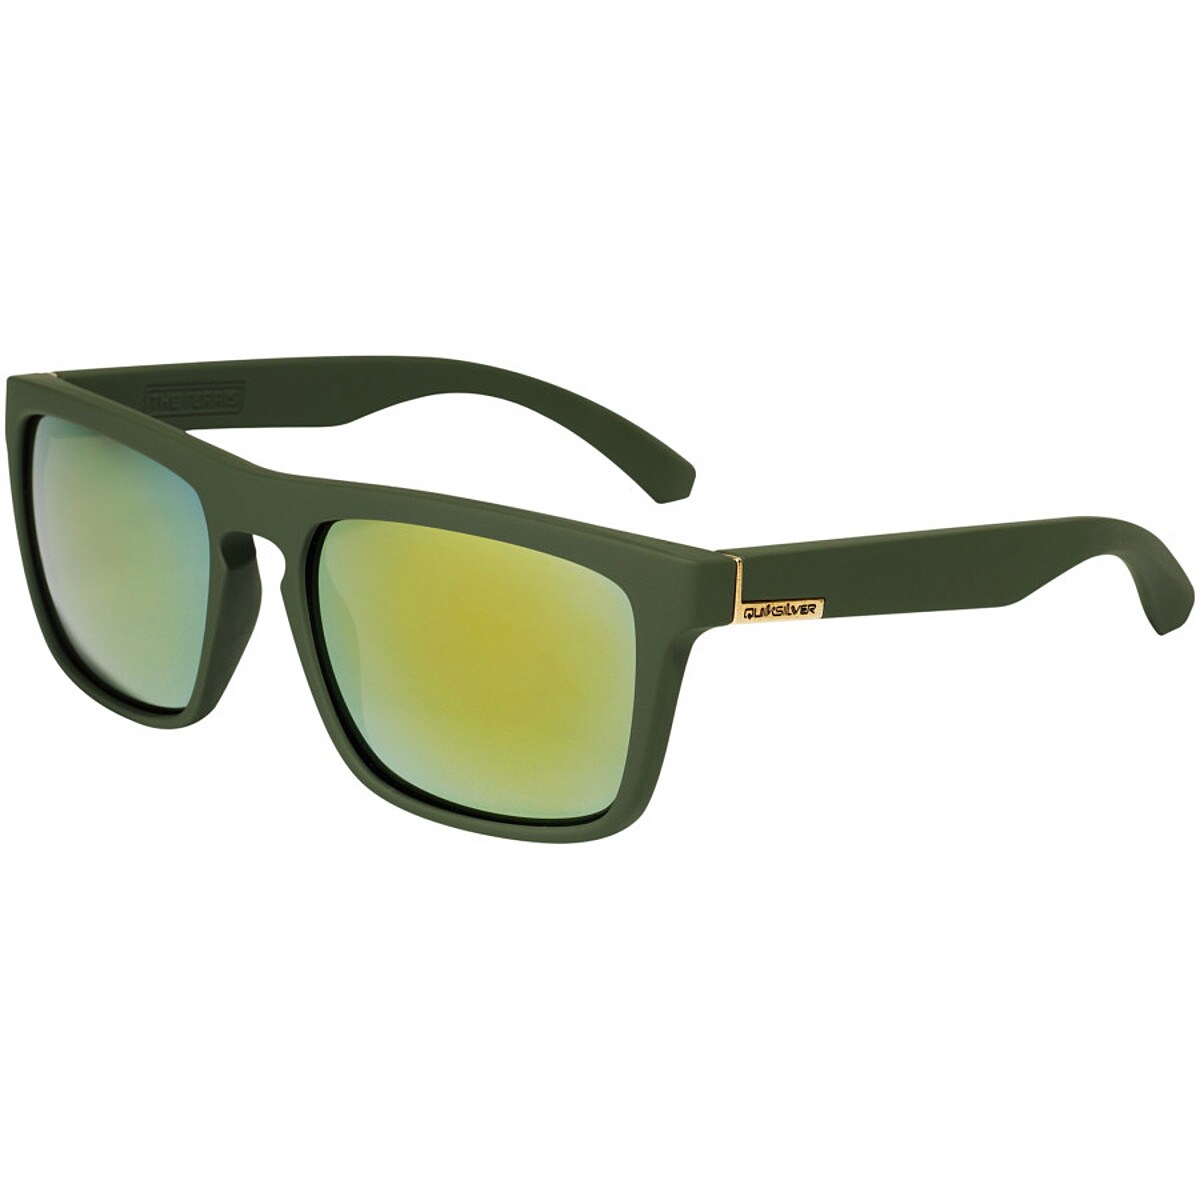 Quiksilver Ferris Sunglasses - Accessories